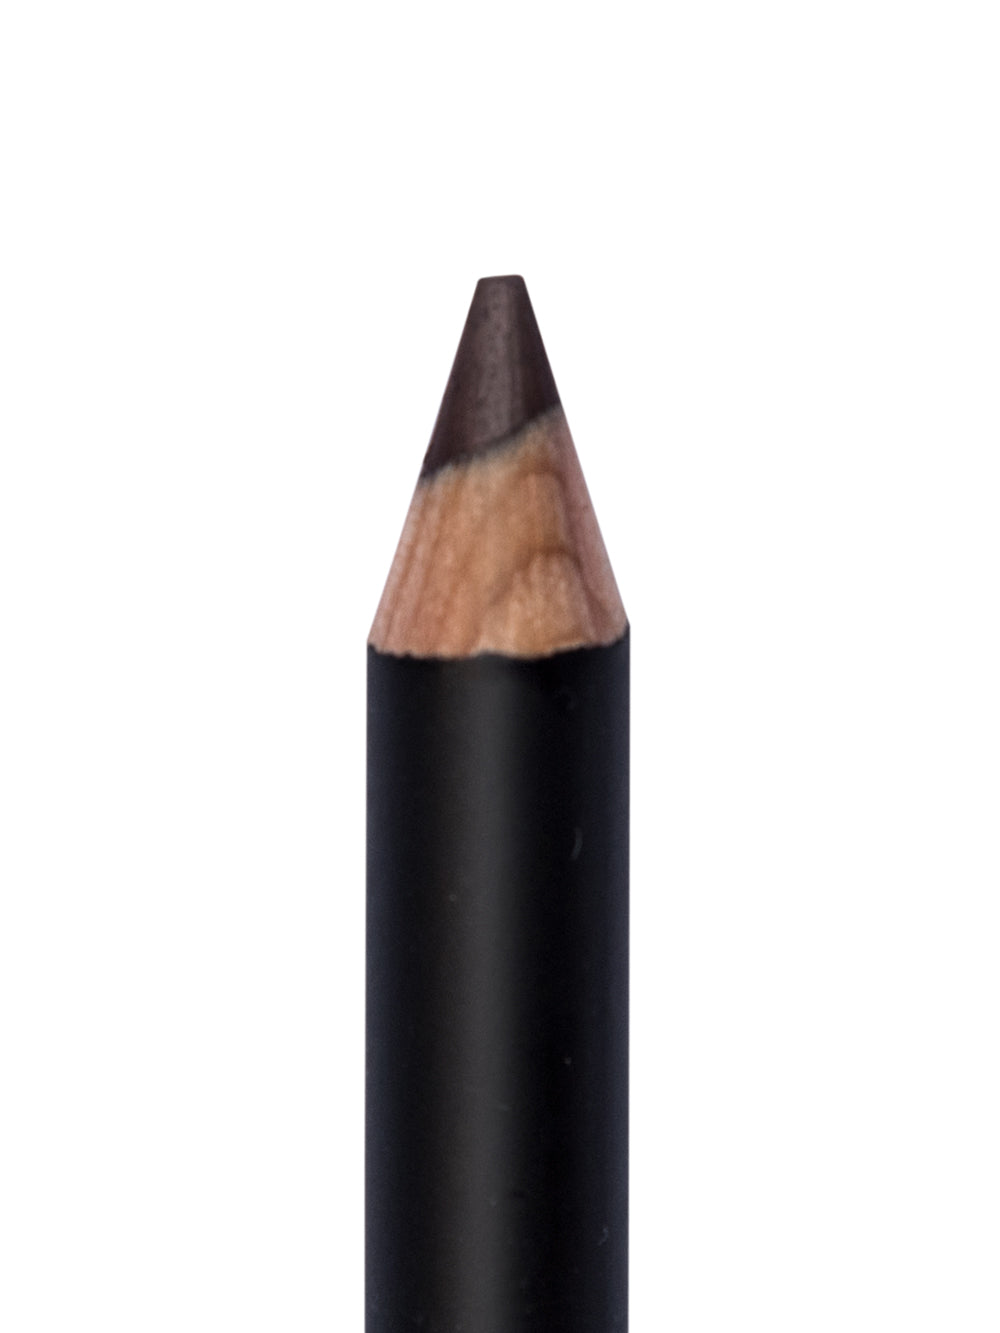 Wet & Dry Eyeliner Pencil - Purple